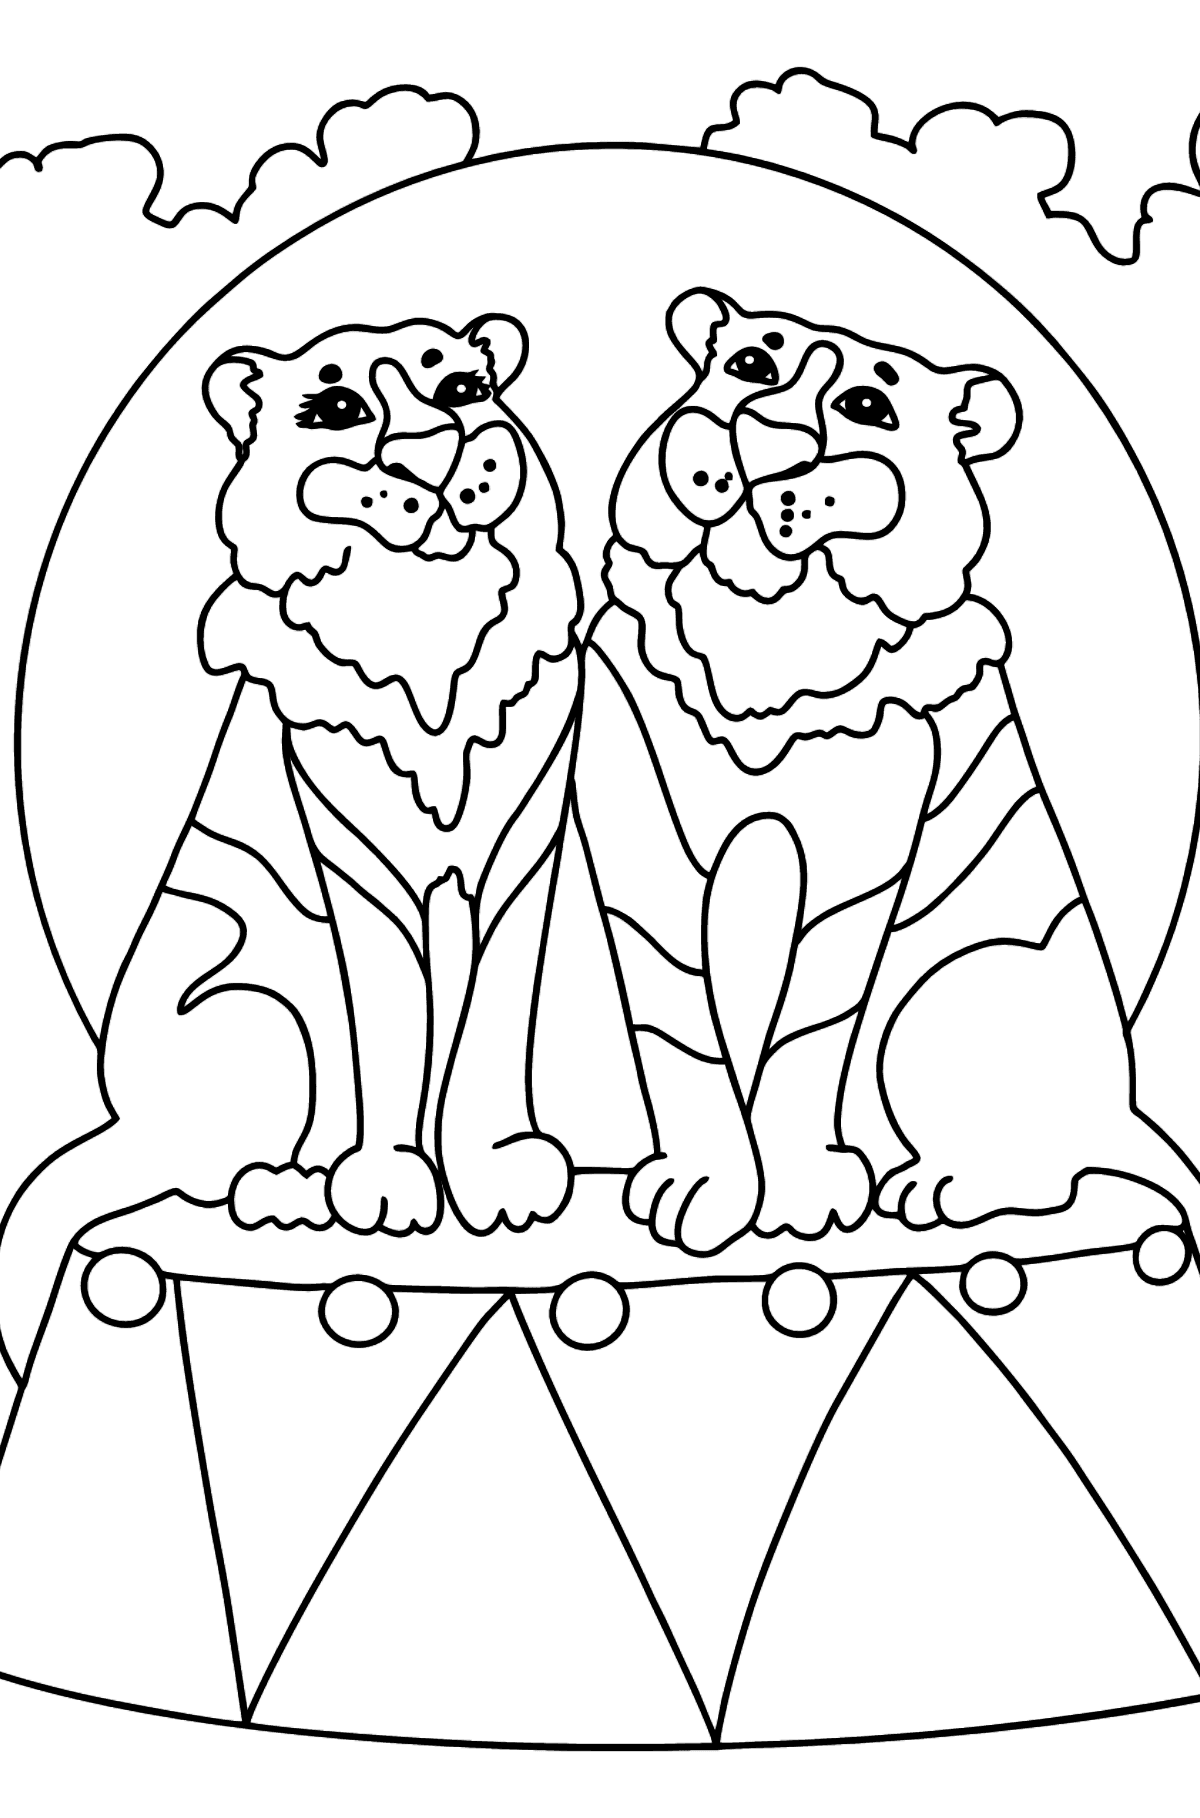 Desenho de tigres no circo para colorir (difícil) - Imagens para Colorir para Crianças